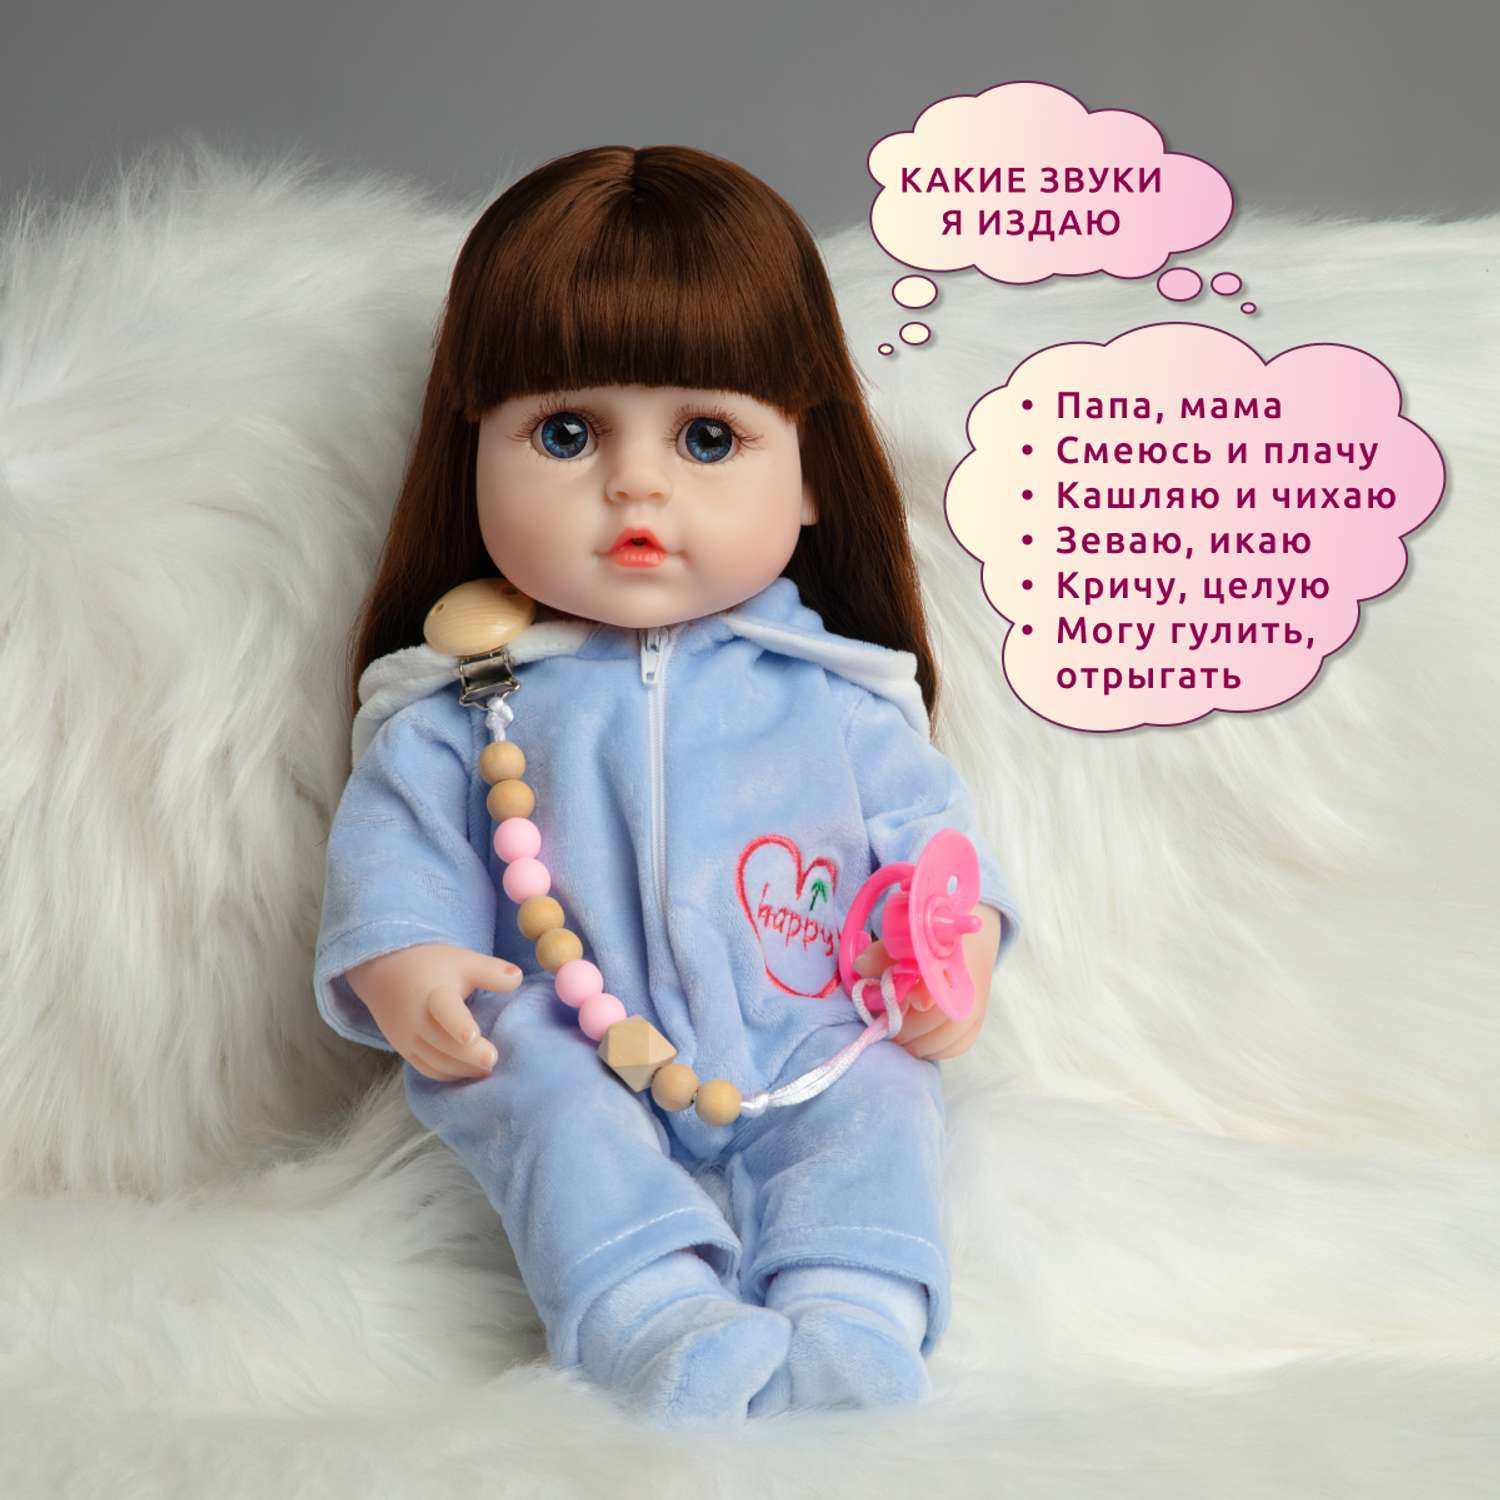 Кукла Реборн QA BABY девочка Надюша интерактивная силиконовая Пупс Reborn 38 см 3804 - фото 3